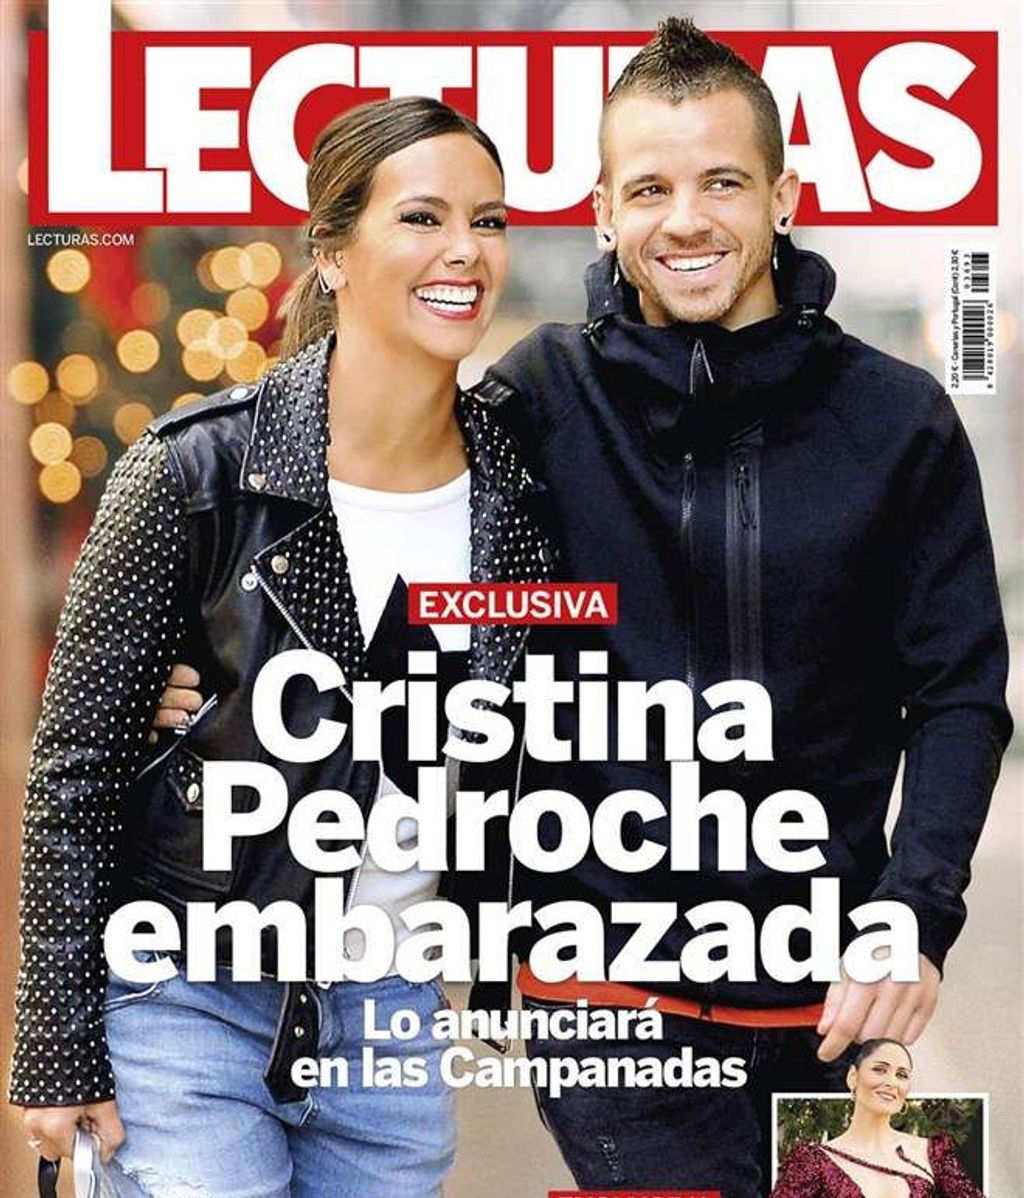 La portada que adelantó el embarazo de Cristina Pedroche